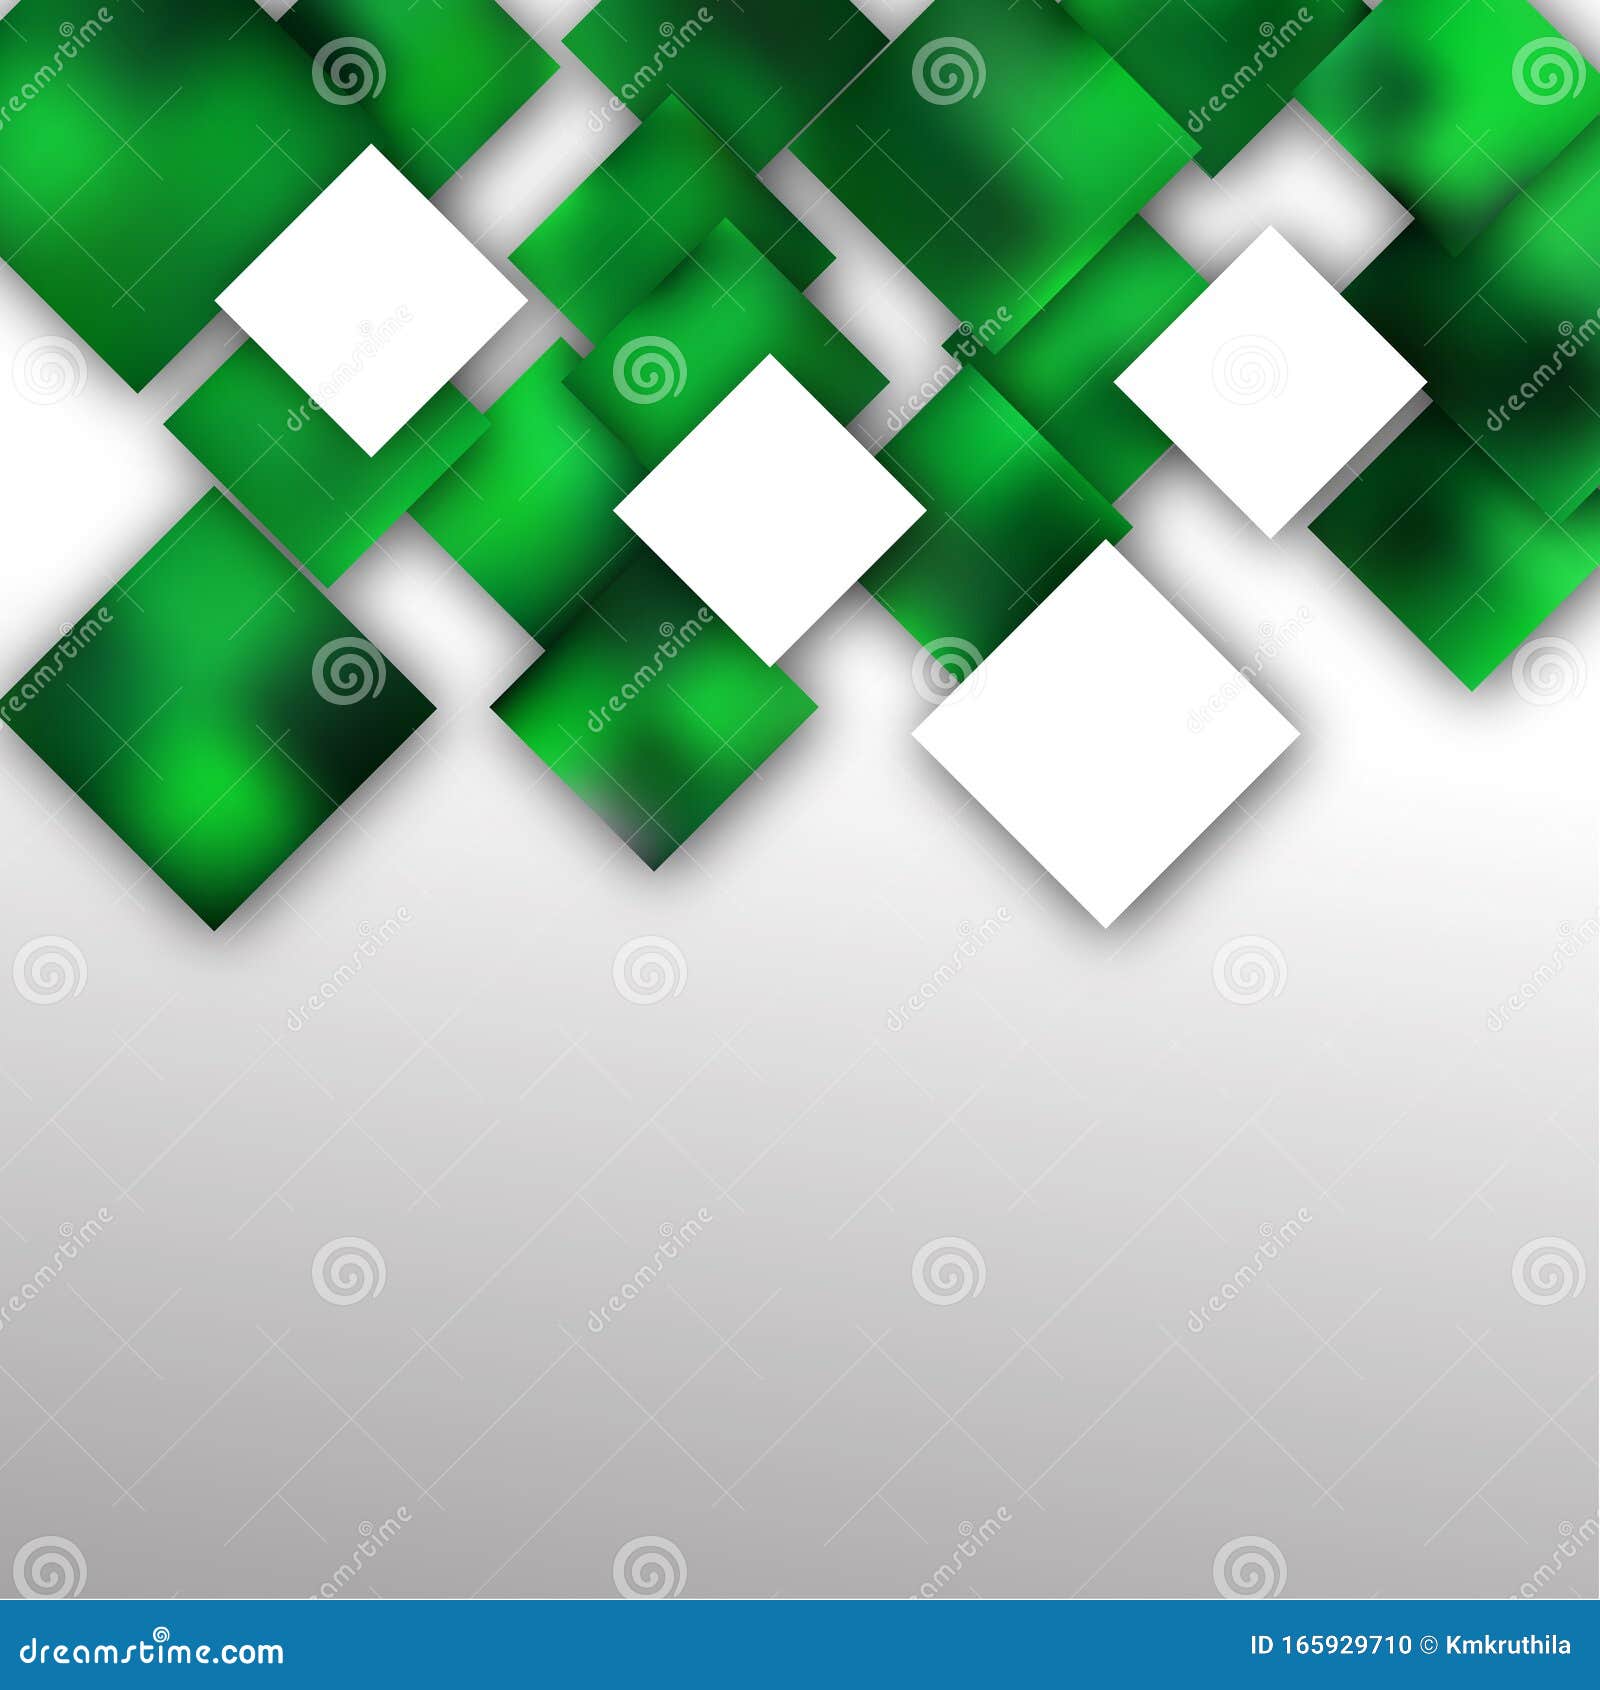 Hintergrundbild Des Modernen Abstrakten Grun Und Weissplatzes Vektor Abbildung Illustration Von Zeile Rhombus